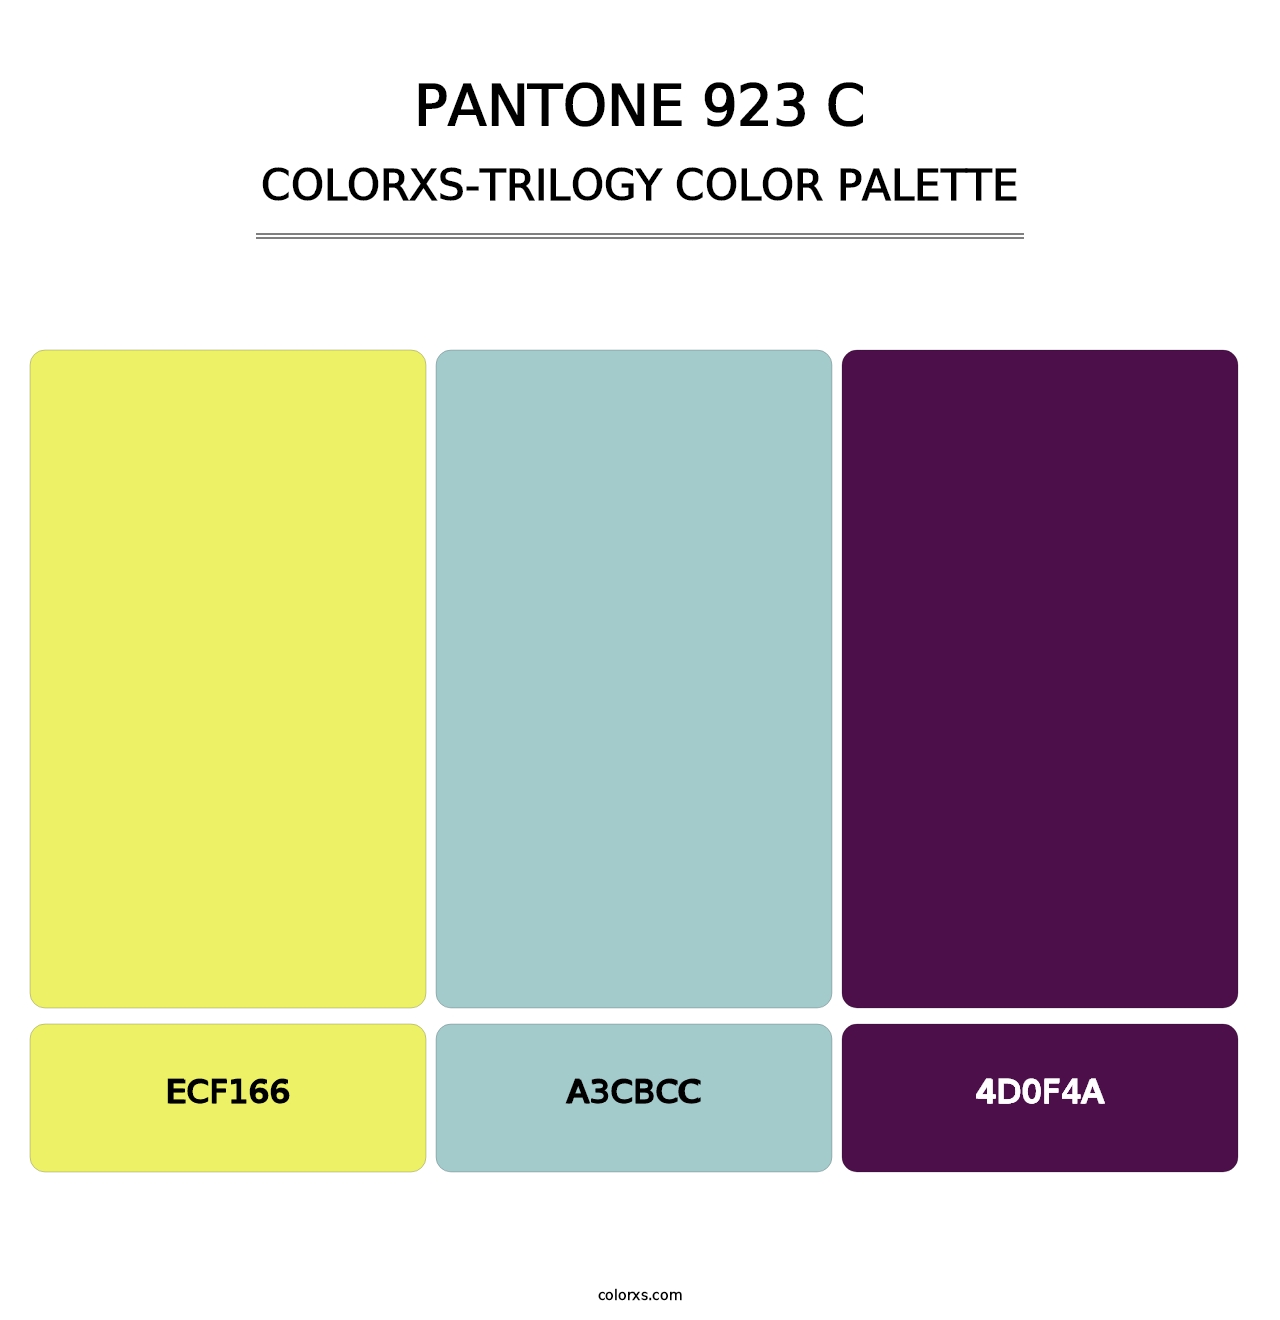 PANTONE 923 C - Colorxs Trilogy Palette